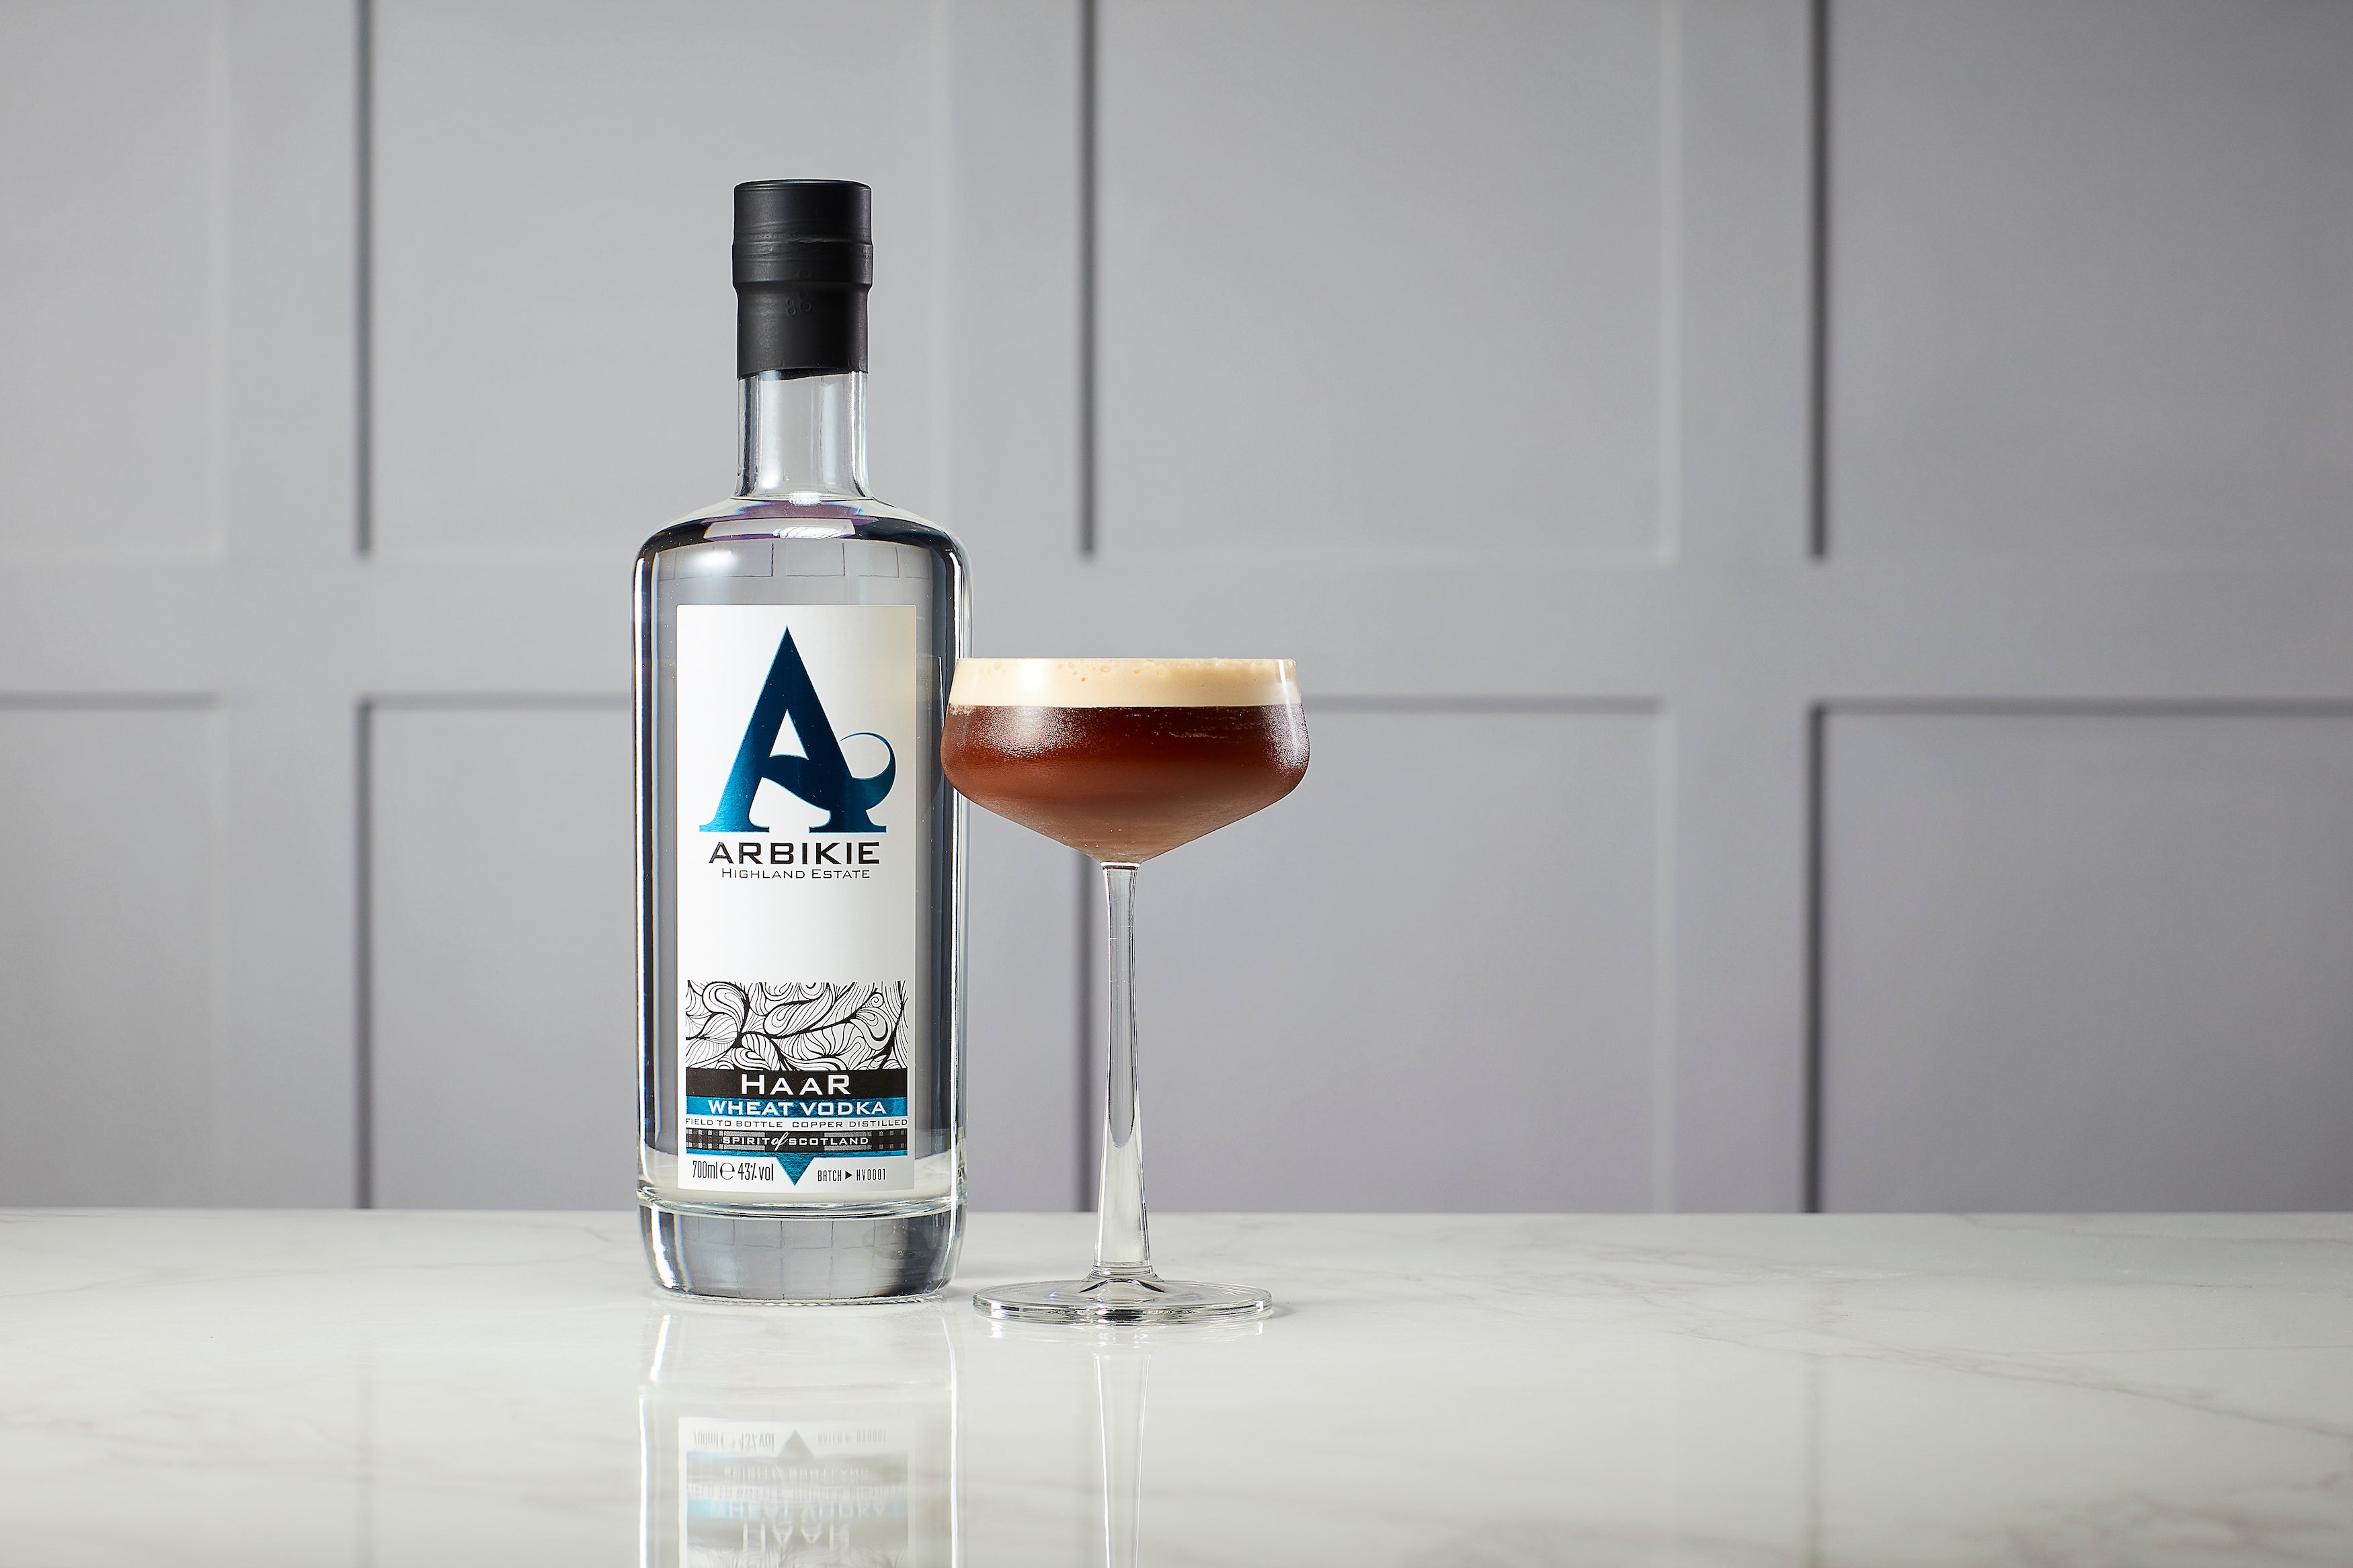 arbikie haar vodka salted caramel espresso martini cocktail